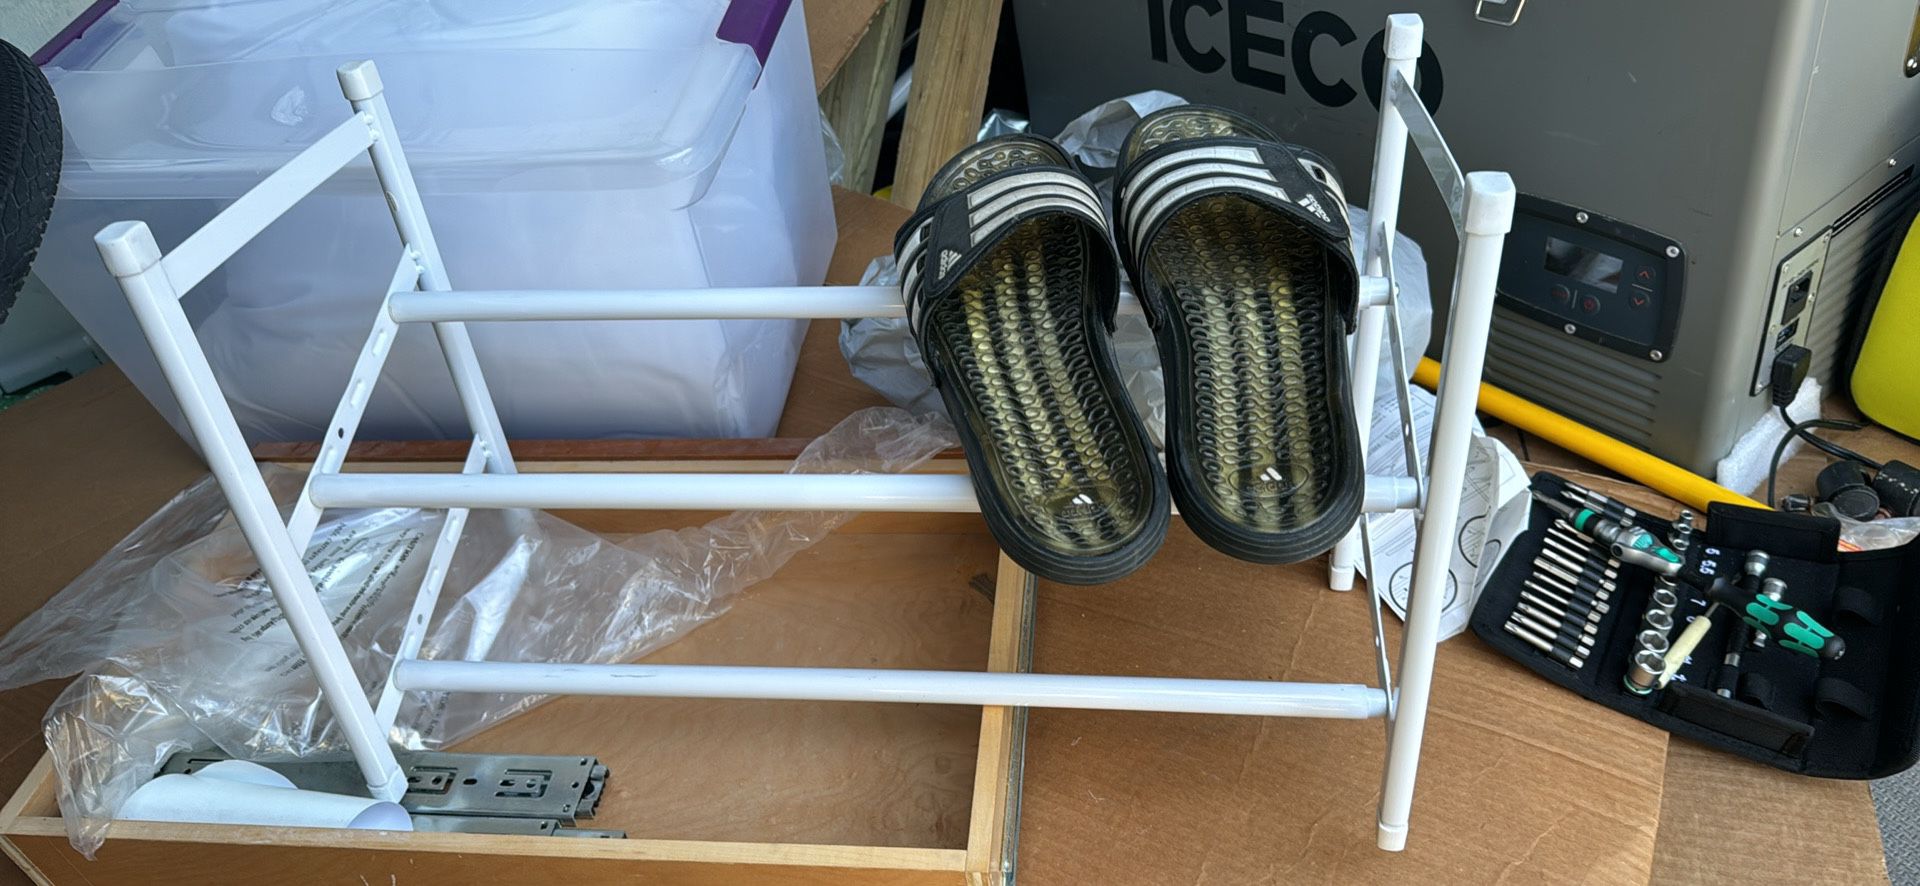 Adjustable Sliding Shoe Rack For Closet Storage